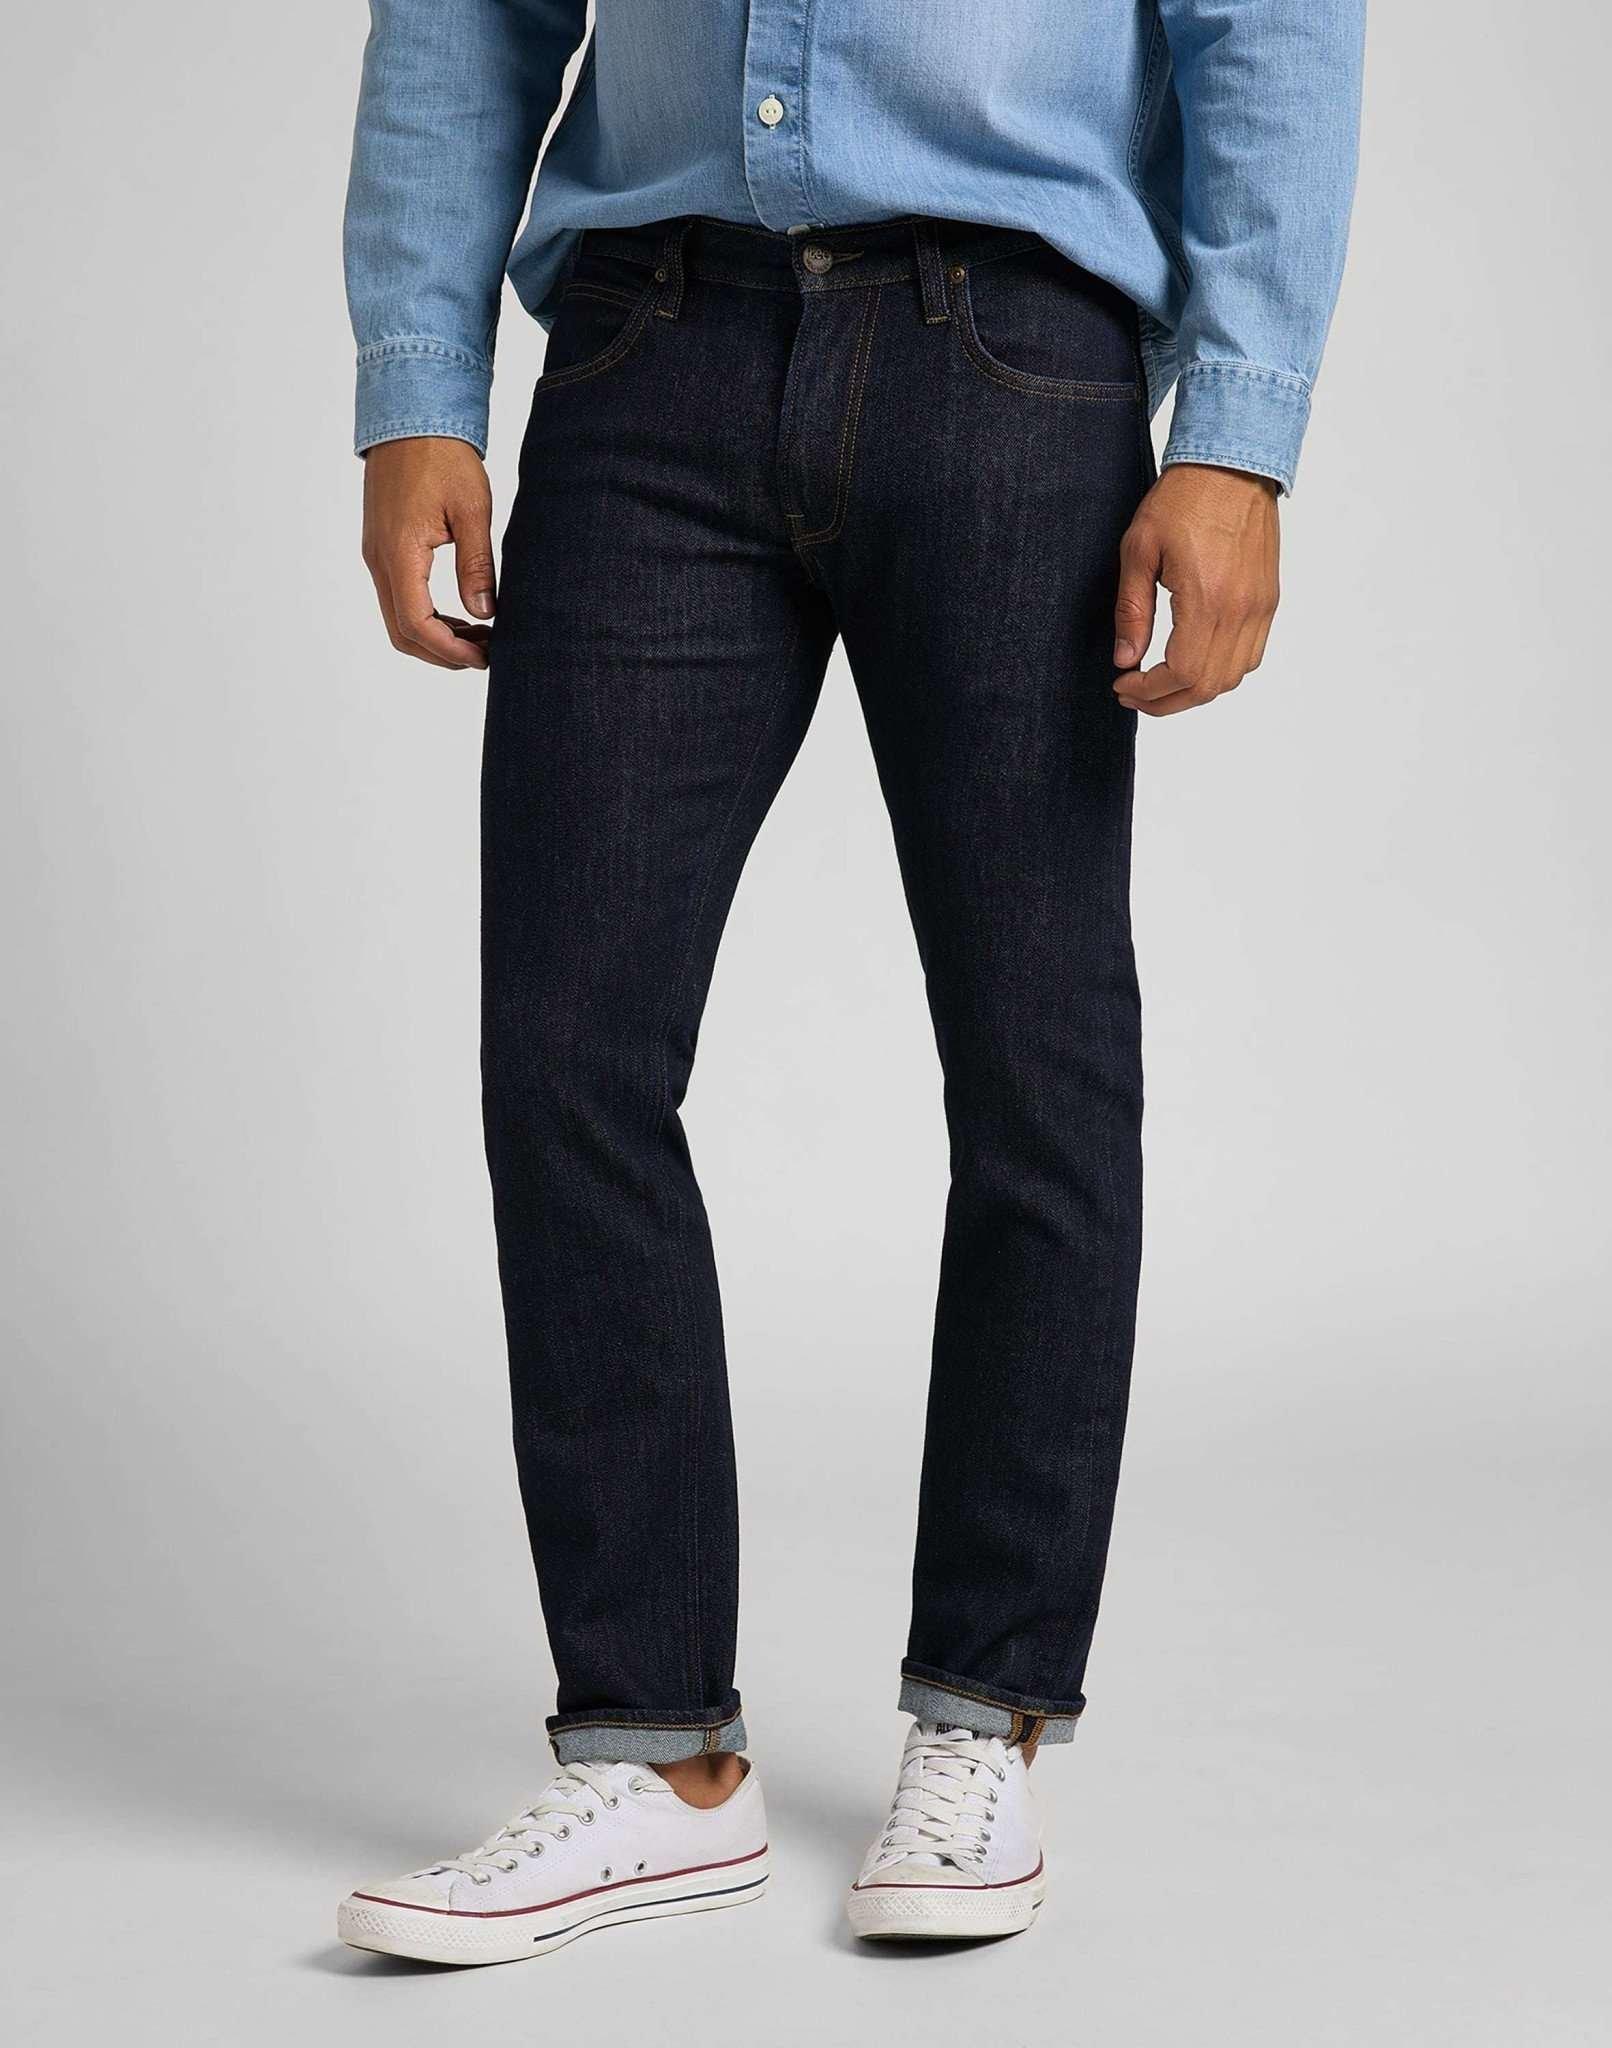 Jeans Straight Leg Daren Herren Blau Denim L34/W33 von Lee